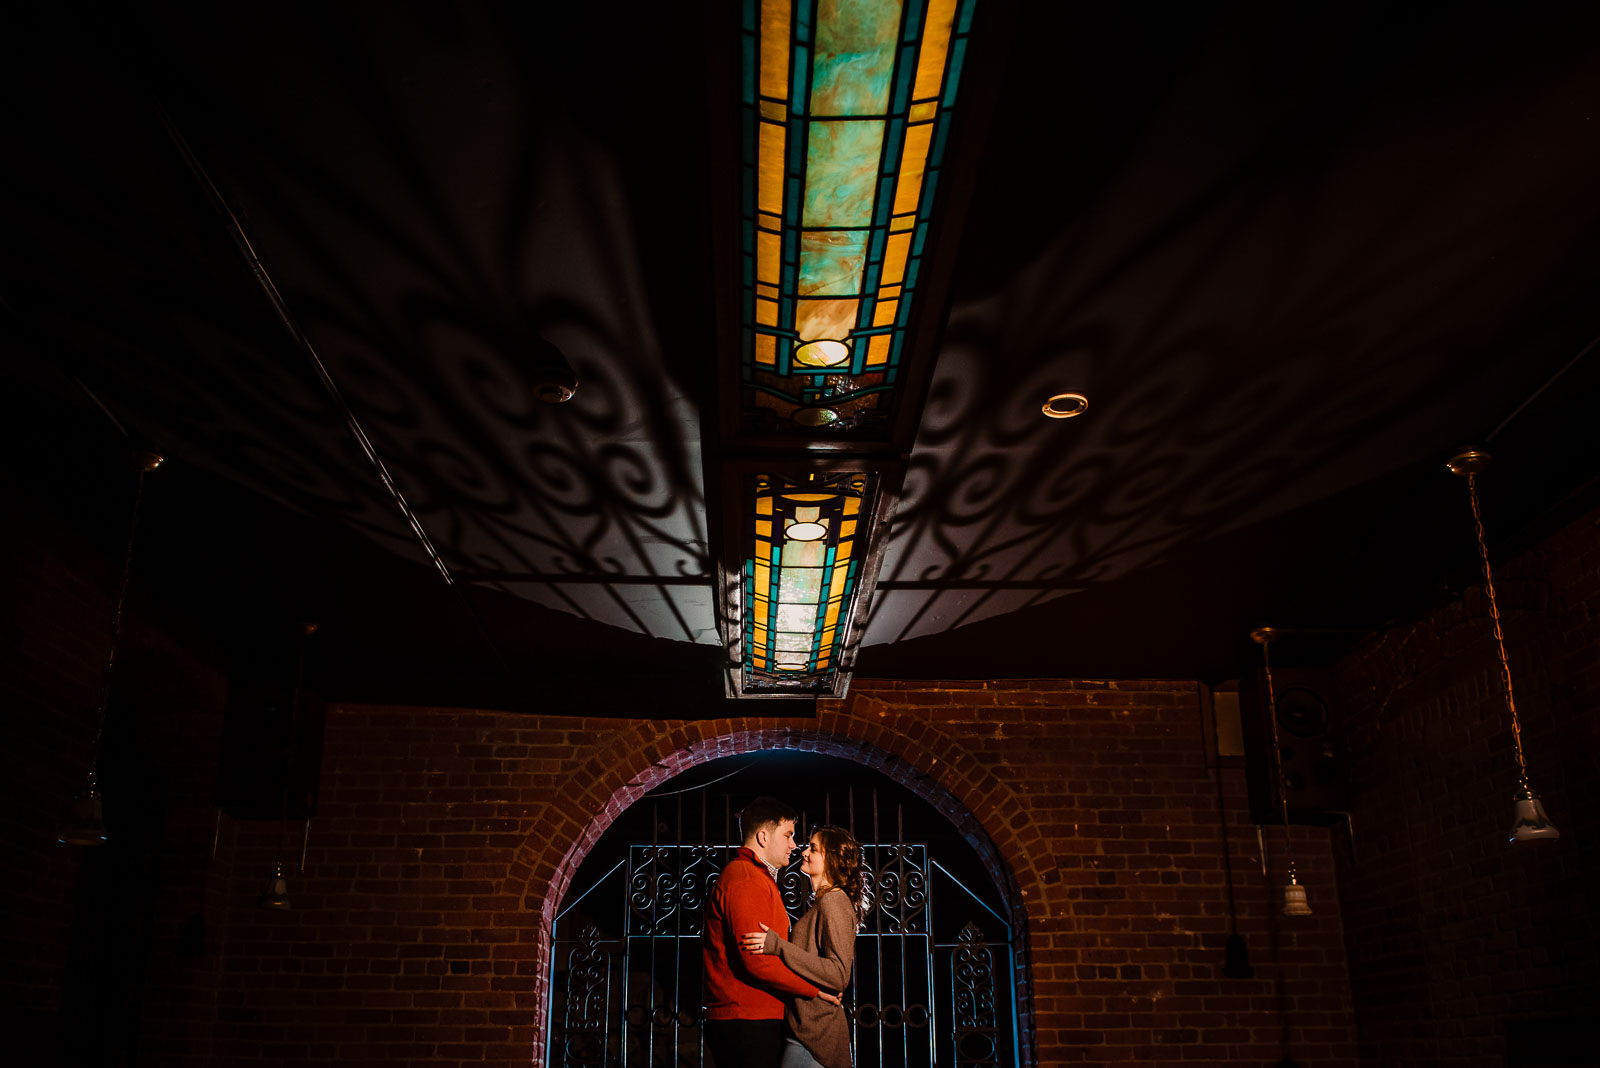 Couple's portrait inside an arch